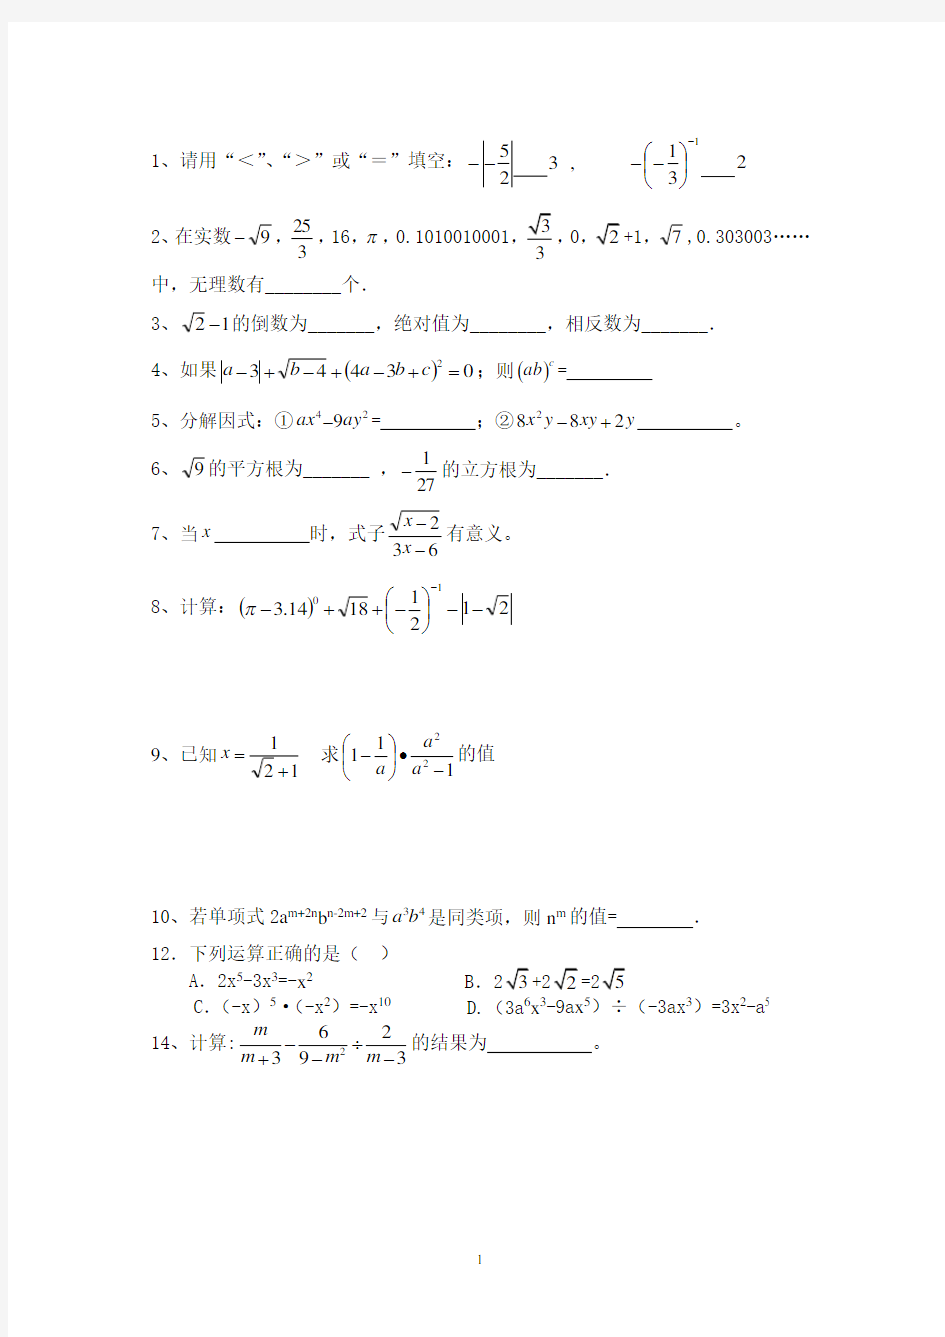 初中数学基础100题.pdf